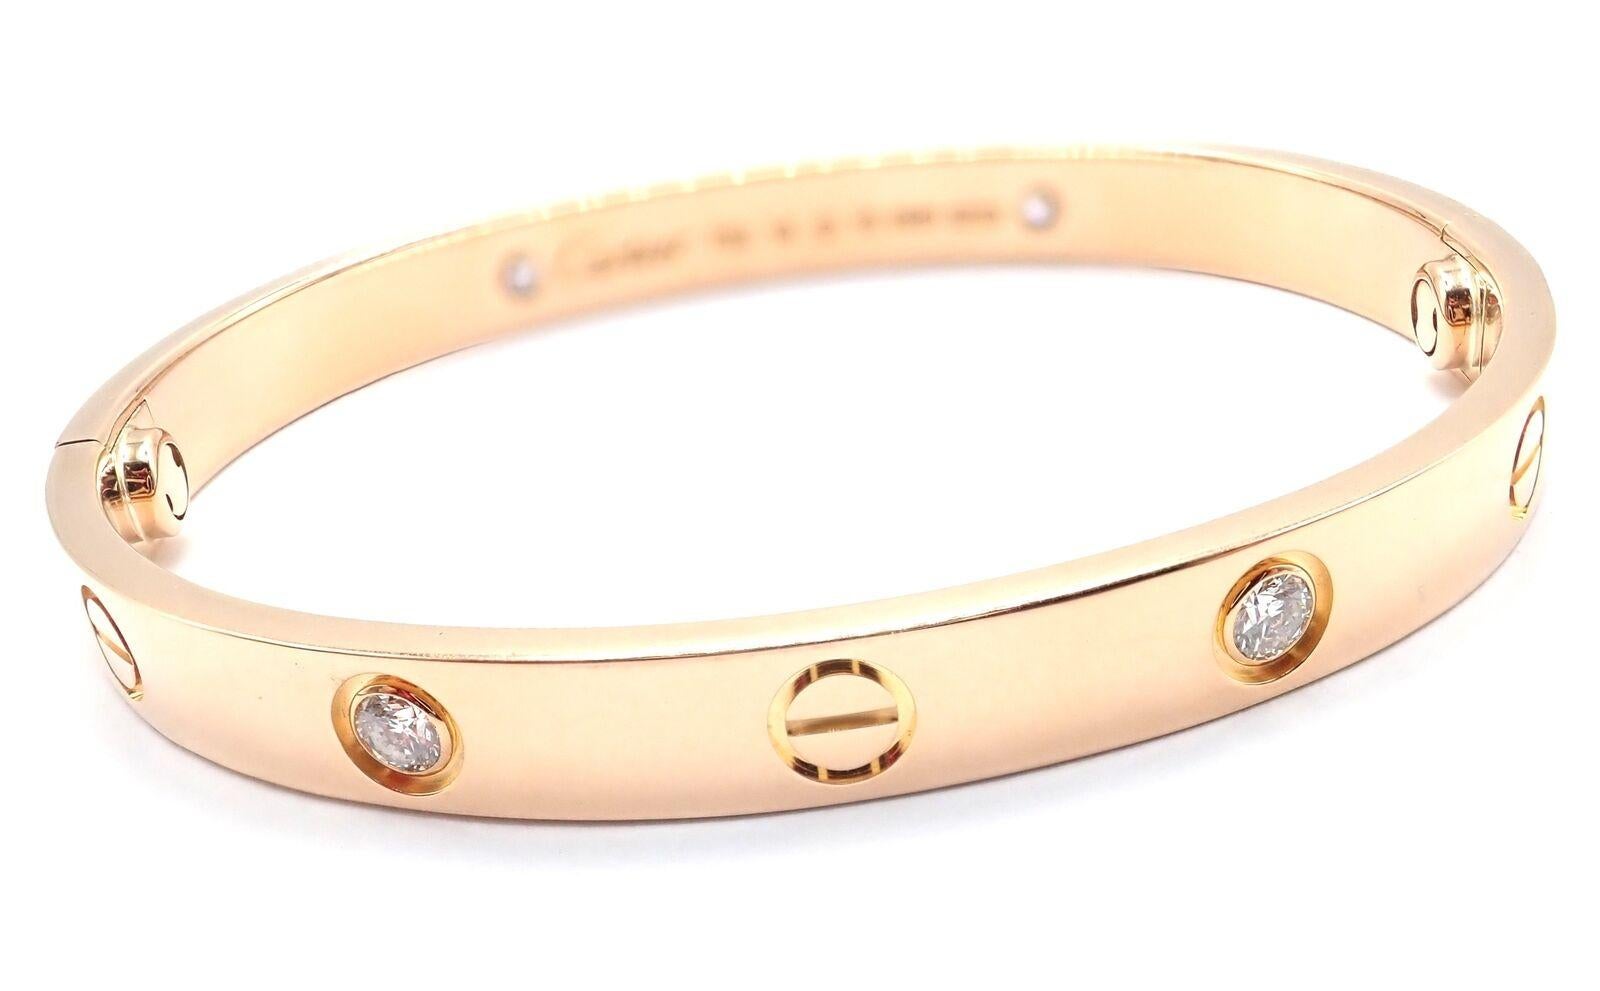 18k Rose Gold 4 Diamanten Cartier LOVE Armreif Armband. Größe 16. 
Dieses Armband wird mit einem Cartier-Echtheitszertifikat von 2014, einer Cartier-Box und einem Schraubendreher geliefert.
Dieses Armband hat ein neuartiges Schraubensystem.
Mit 4